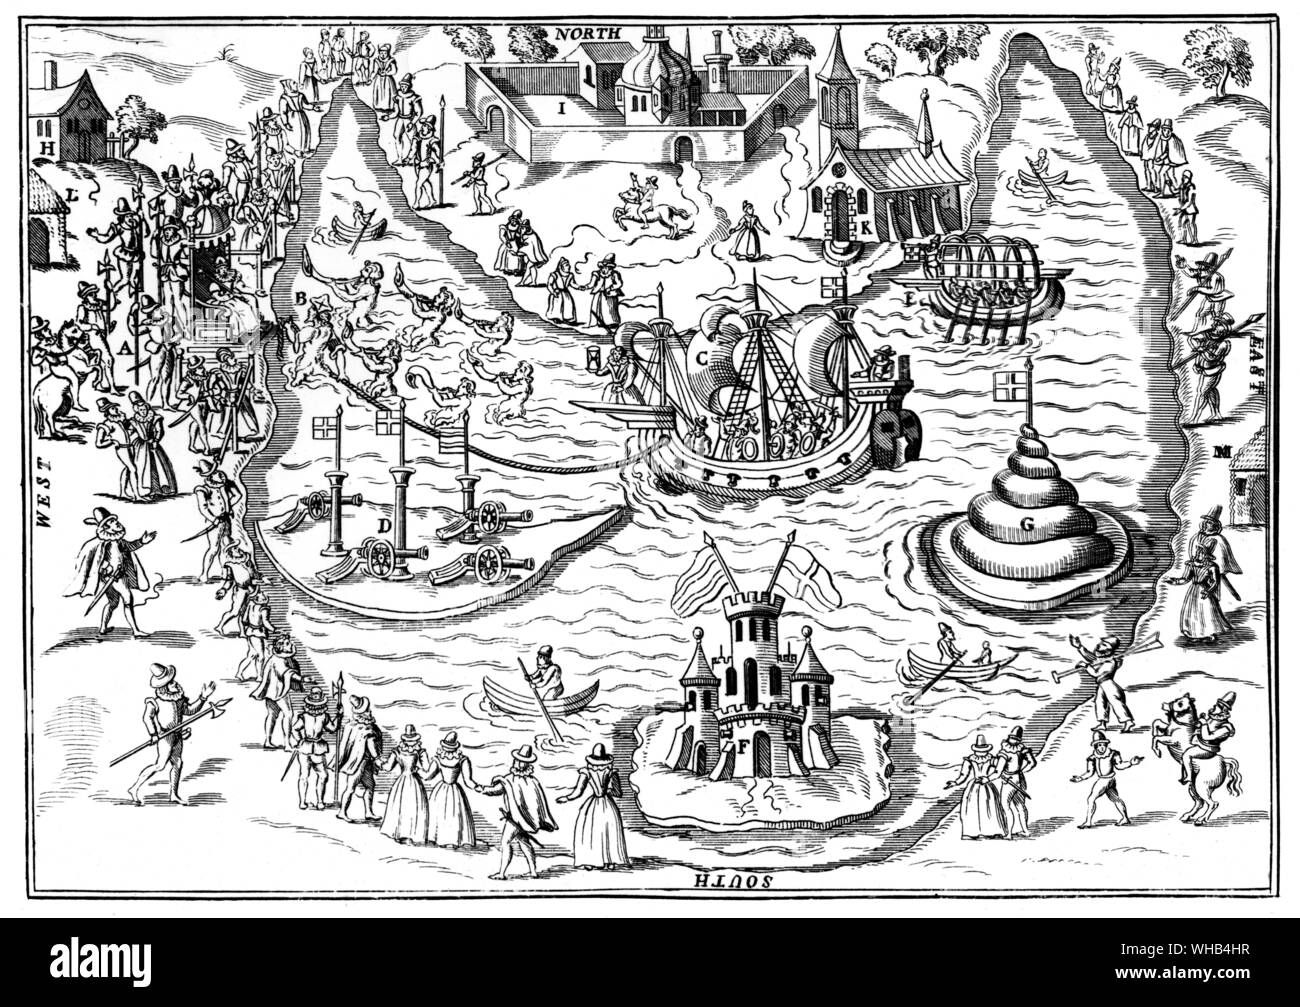 Die Verteidigung von London, im Jahre 1588 von dem italienischen Ingenieur Giambelli, der auch die Hölle - Brenner erfunden, die Ausgearbeiteten Feuer Schiffe in Antwerpen verwendet Späten 16 C verbessert Stockfoto